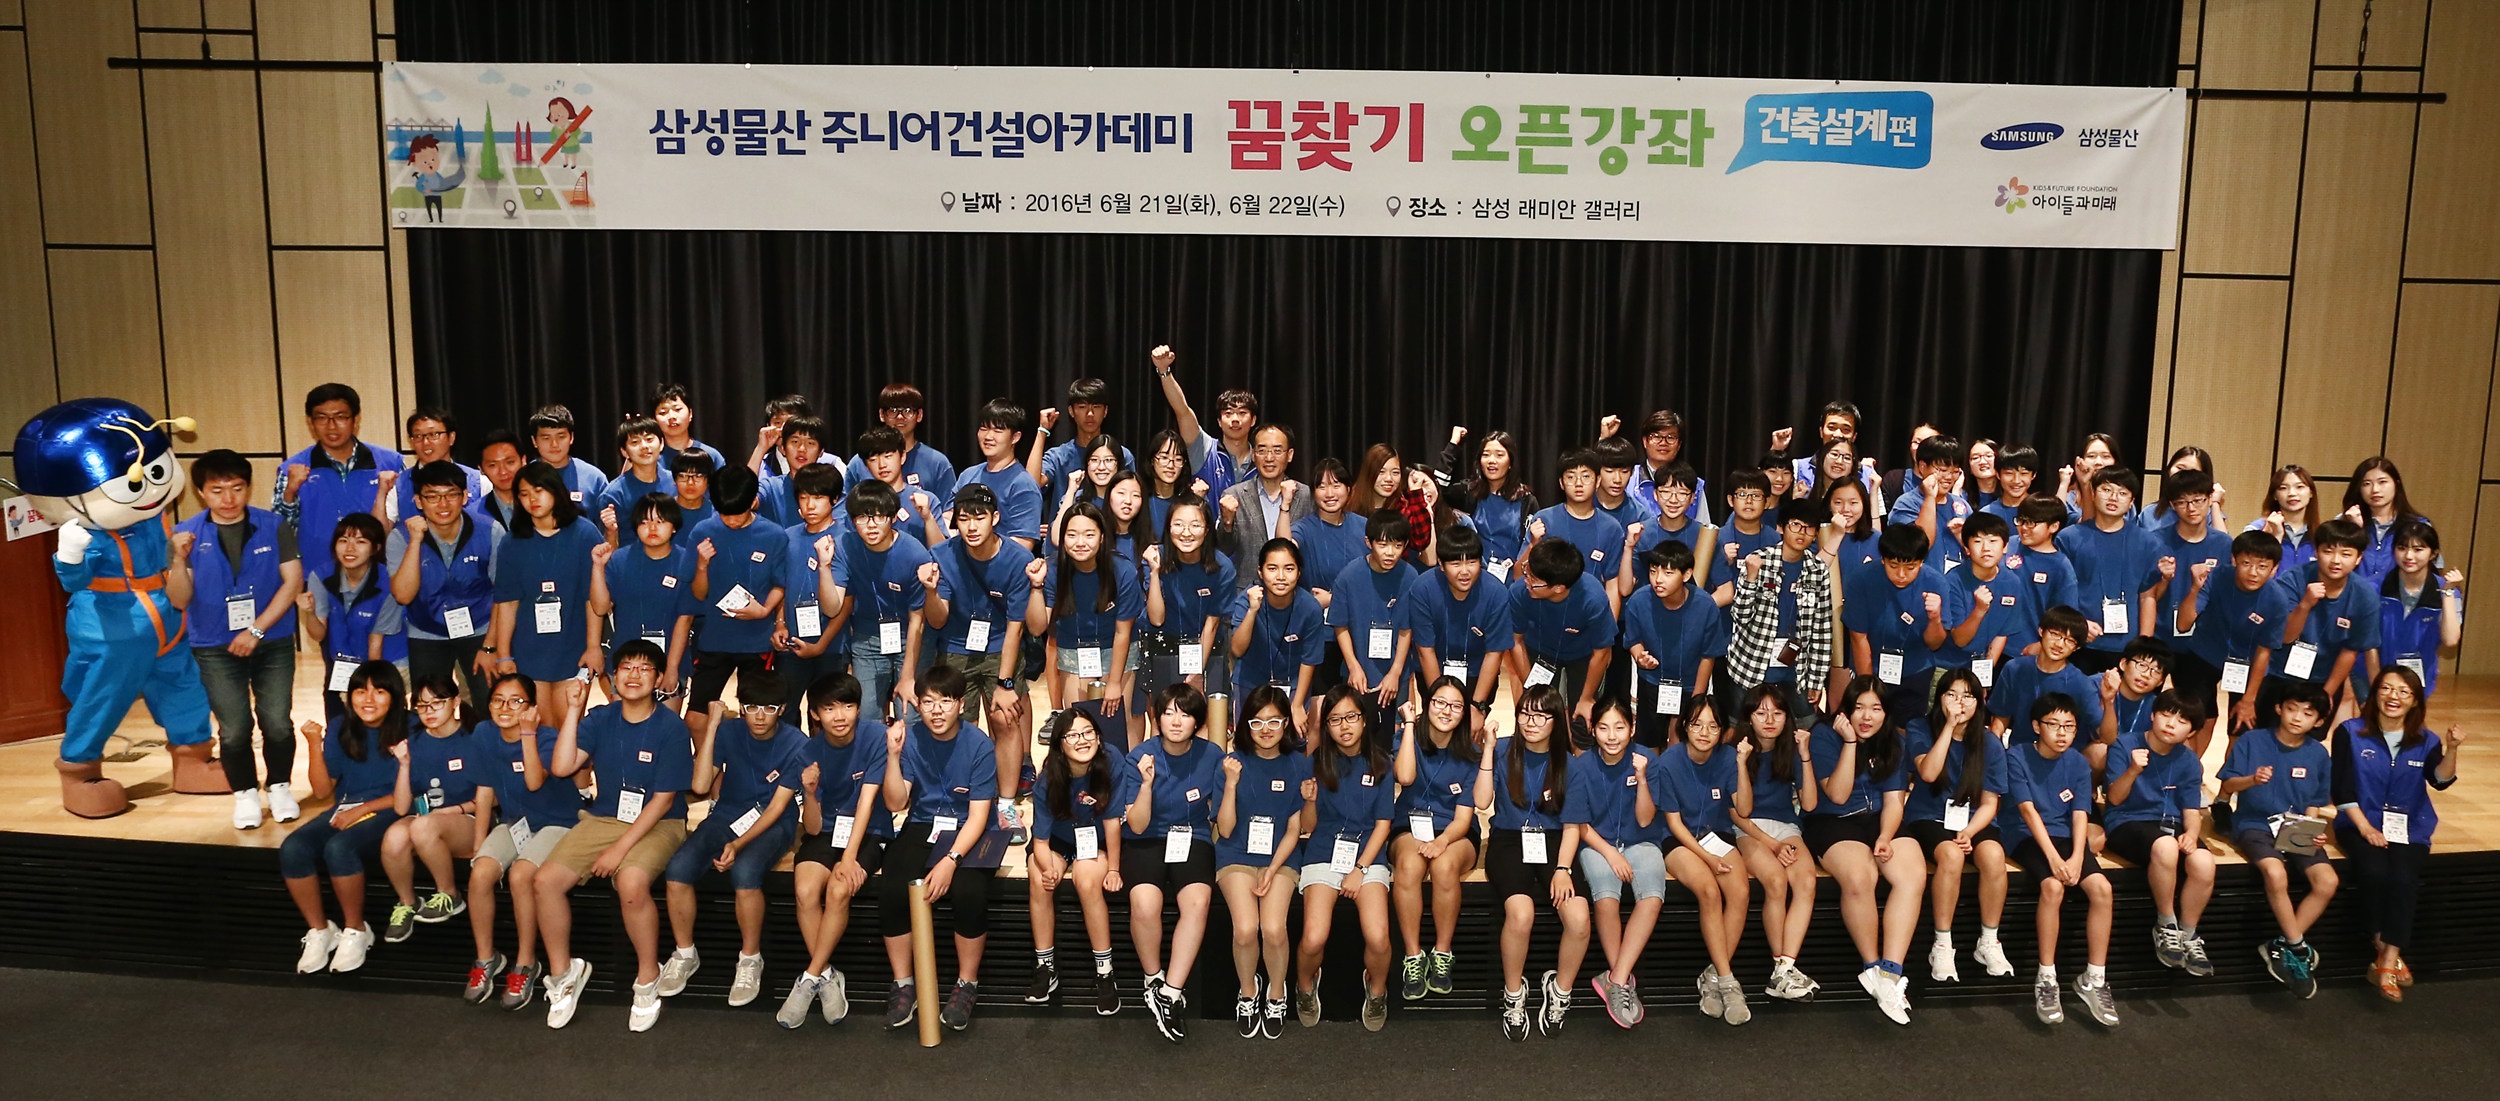 삼성물산, 중학생 꿈찾기 프로젝트 관련 사진7